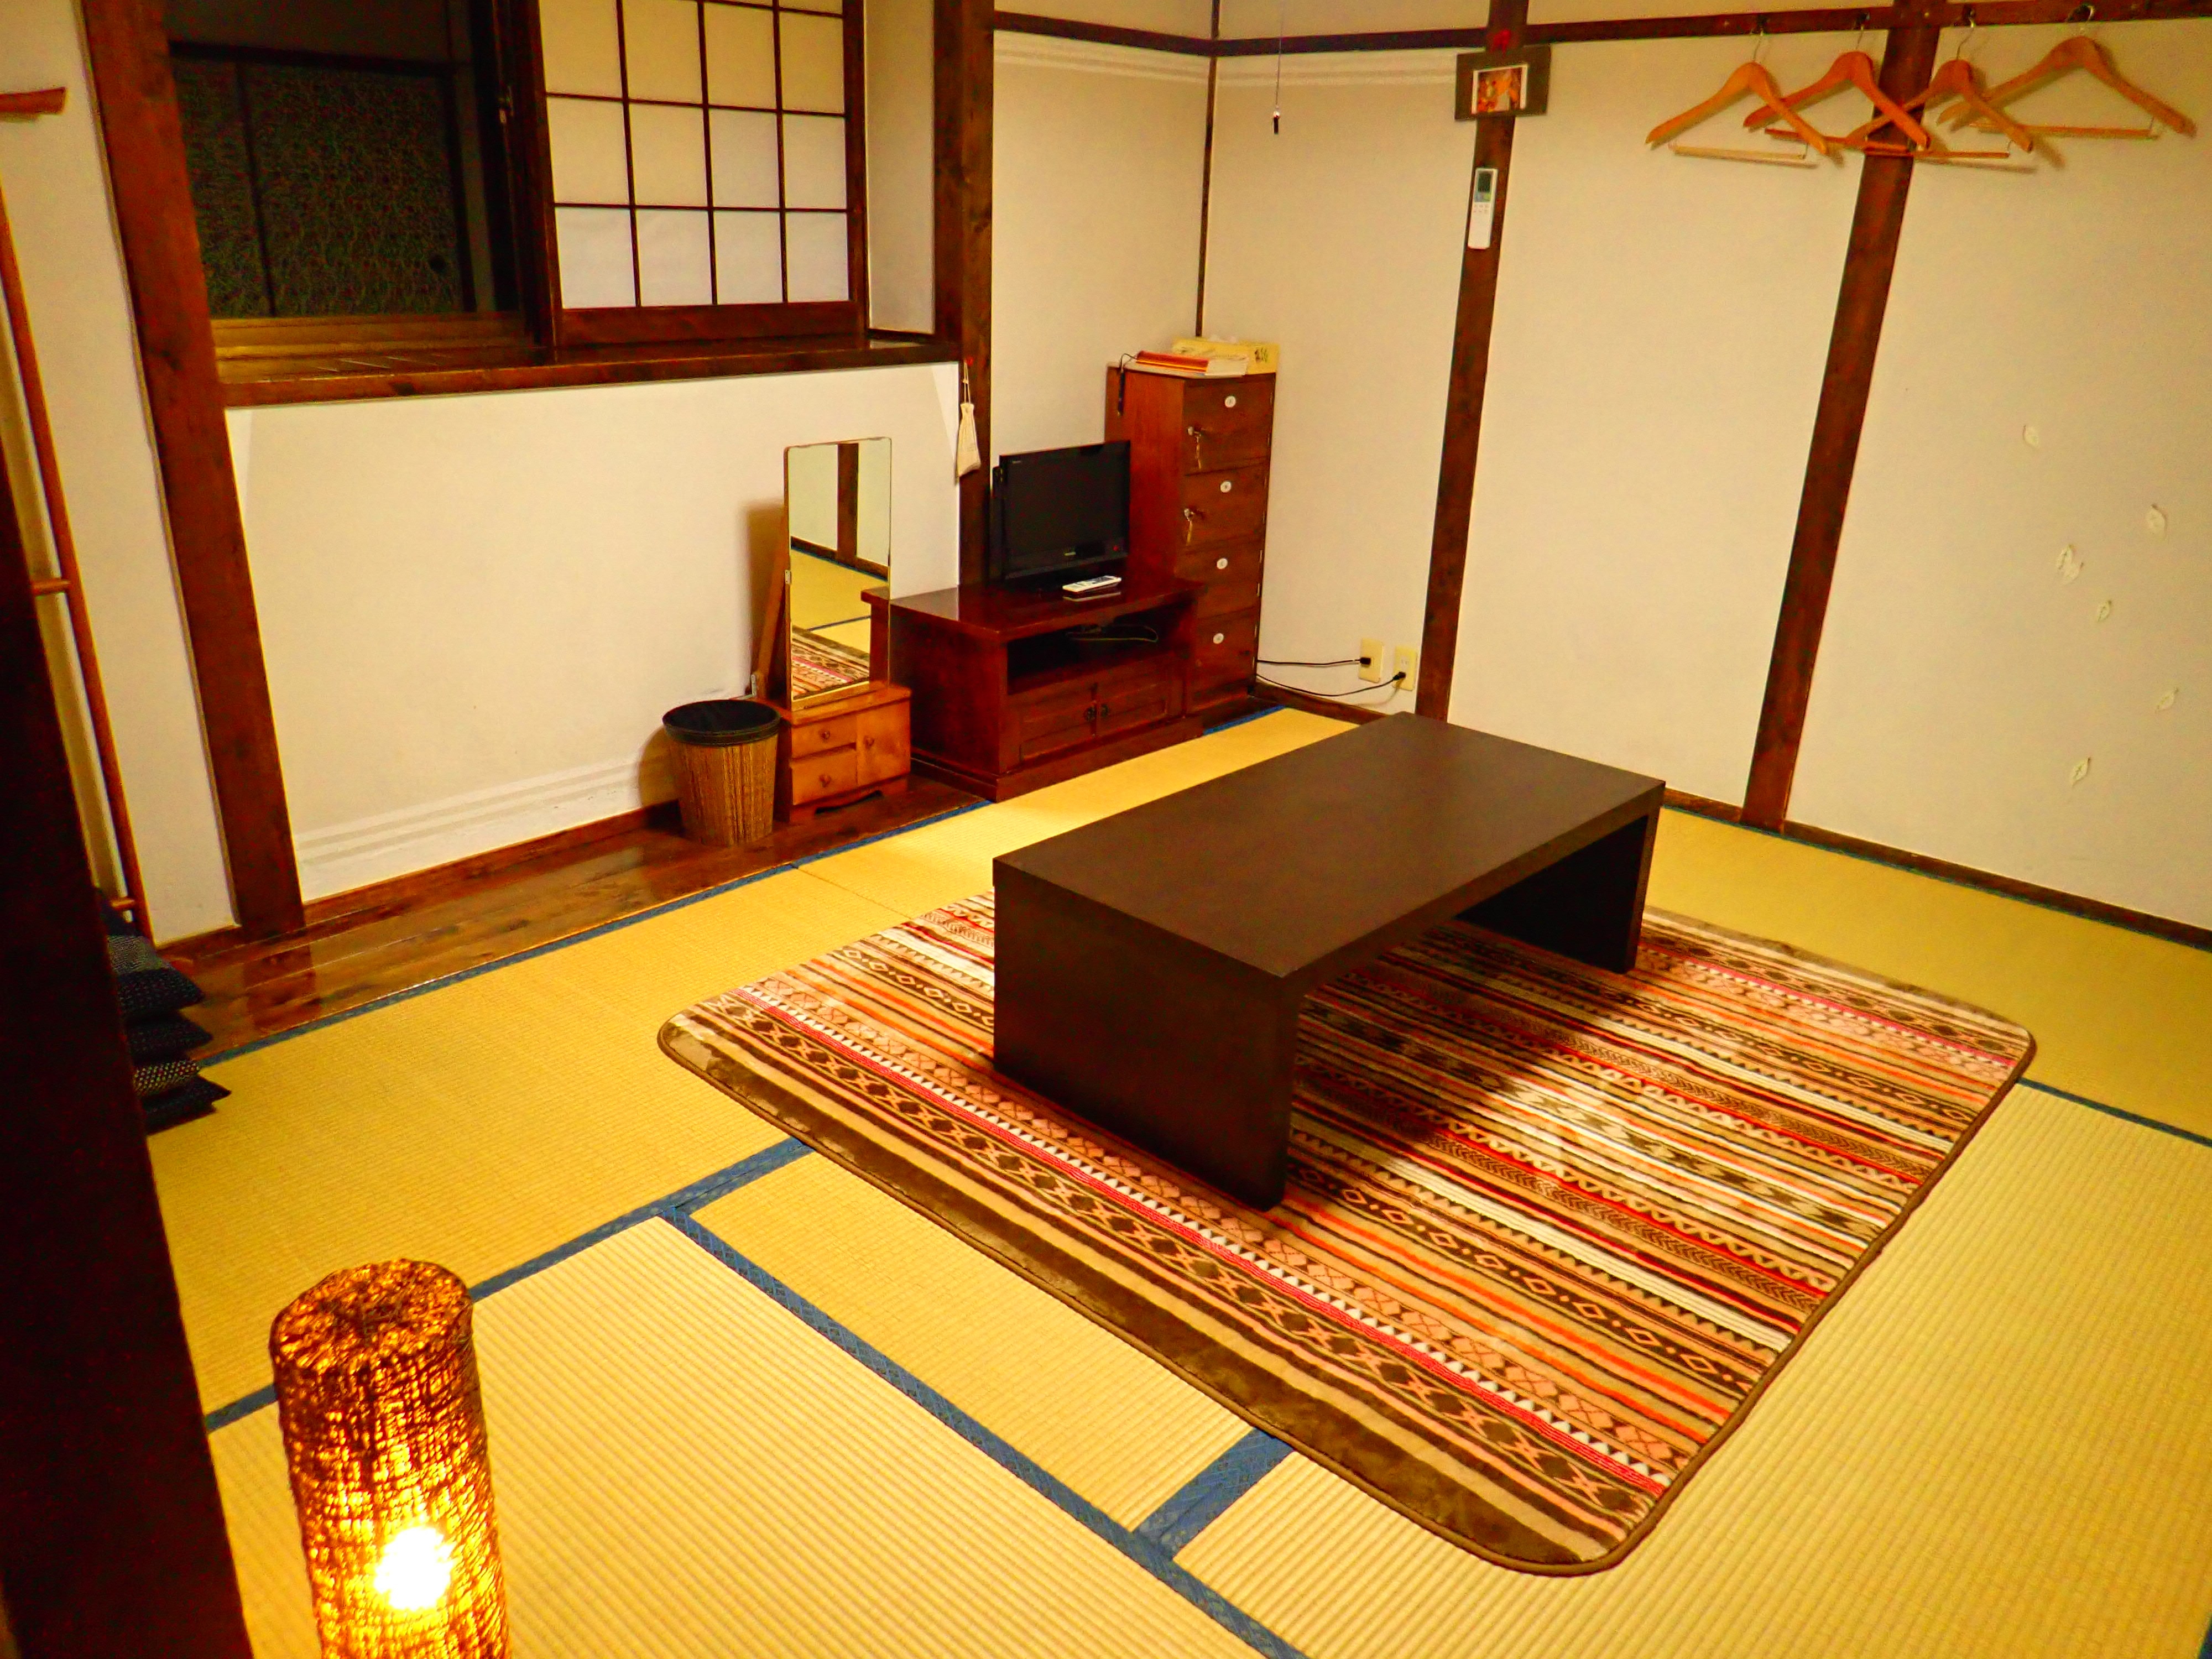 [ตัวอย่างห้องสไตล์ญี่ปุ่นปูเสื่อทาทามิ 6 ห้อง] แม้จะเล็กแต่ก็ใช้เวลาพักผ่อนได้อย่างเต็มที่